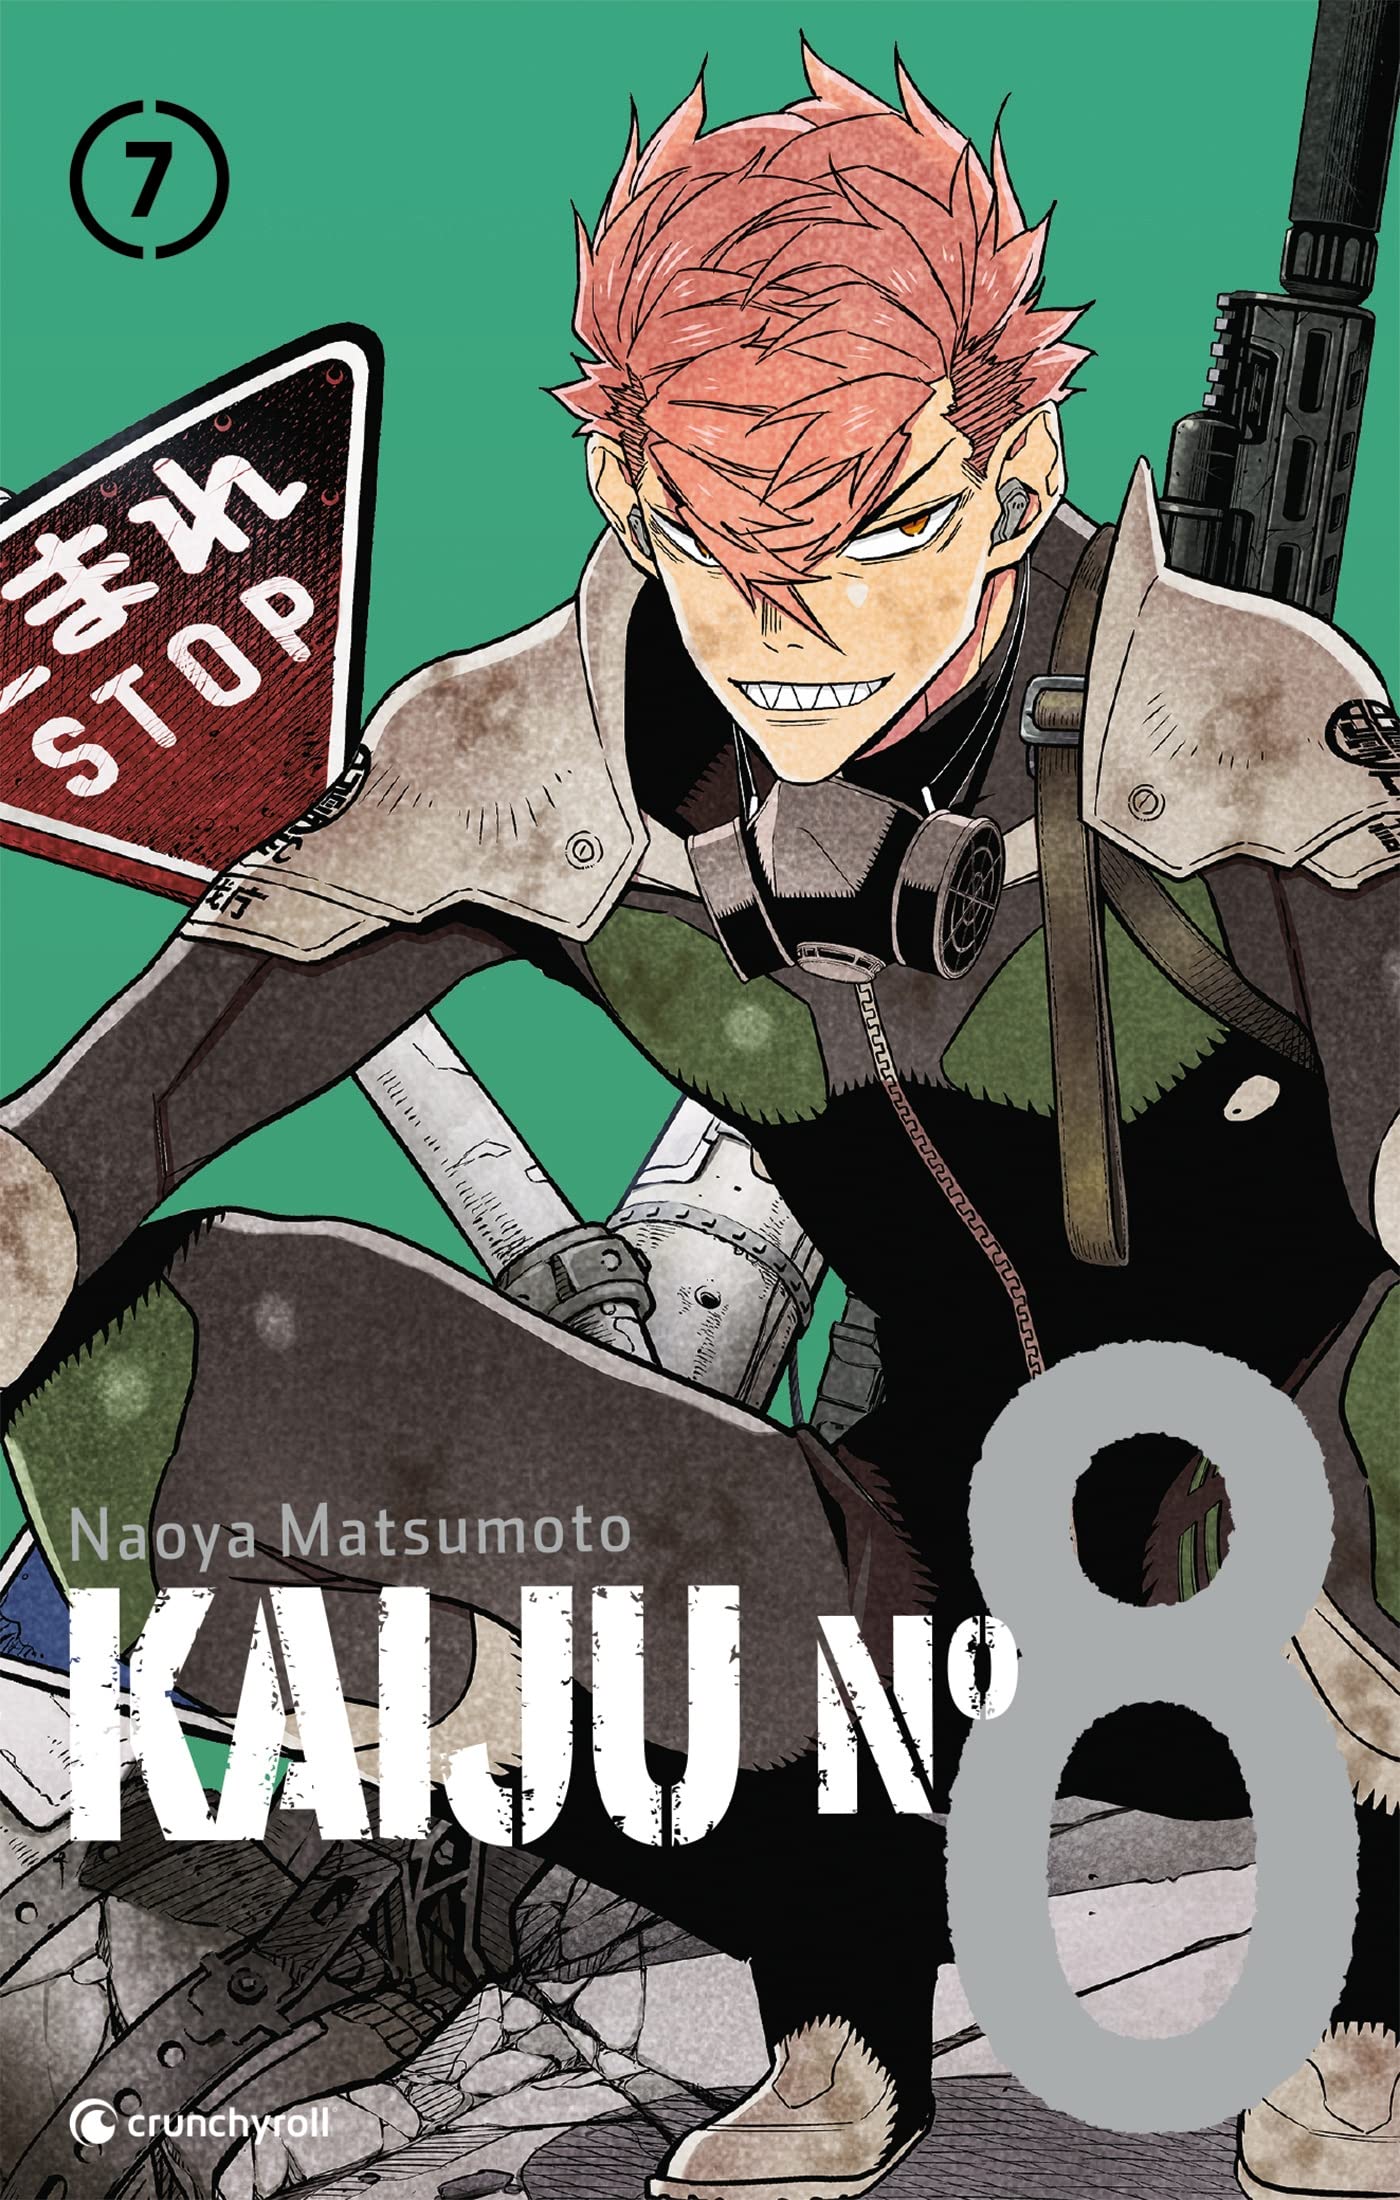 Kaiju n°8 : numéro un des mangas de la catégorie 12-15 ans aux Mordus des Mangas